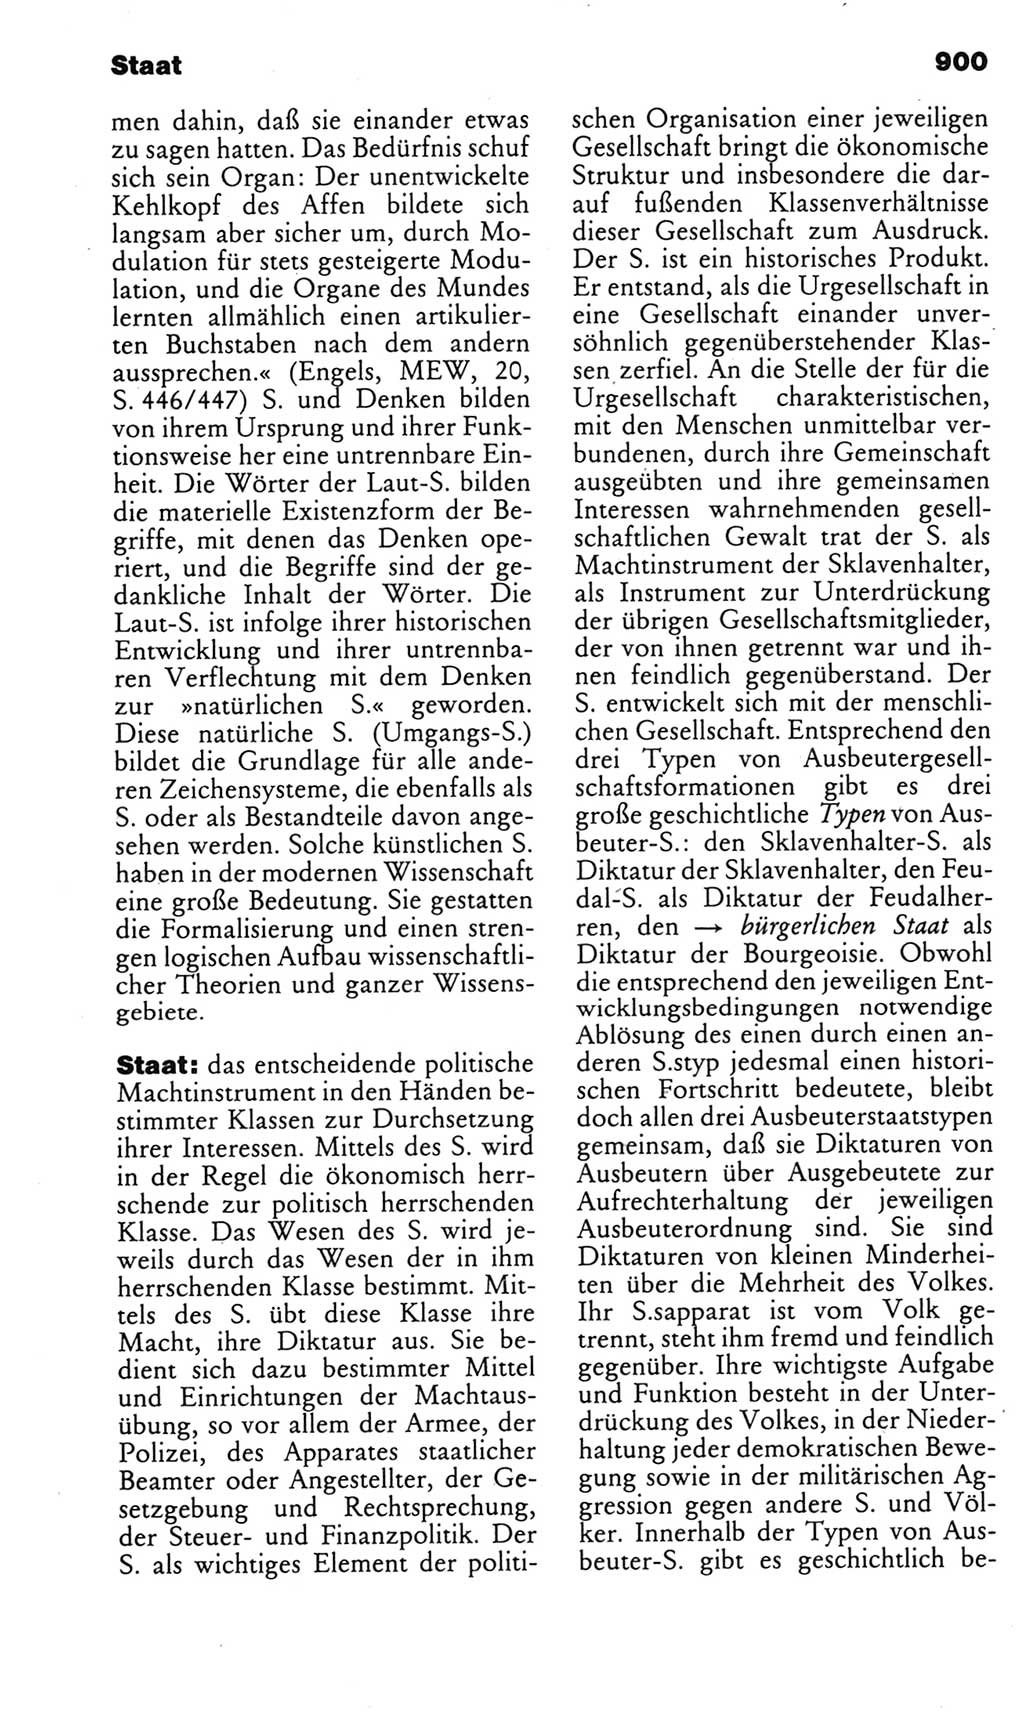 Kleines politisches Wörterbuch [Deutsche Demokratische Republik (DDR)] 1985, Seite 900 (Kl. pol. Wb. DDR 1985, S. 900)